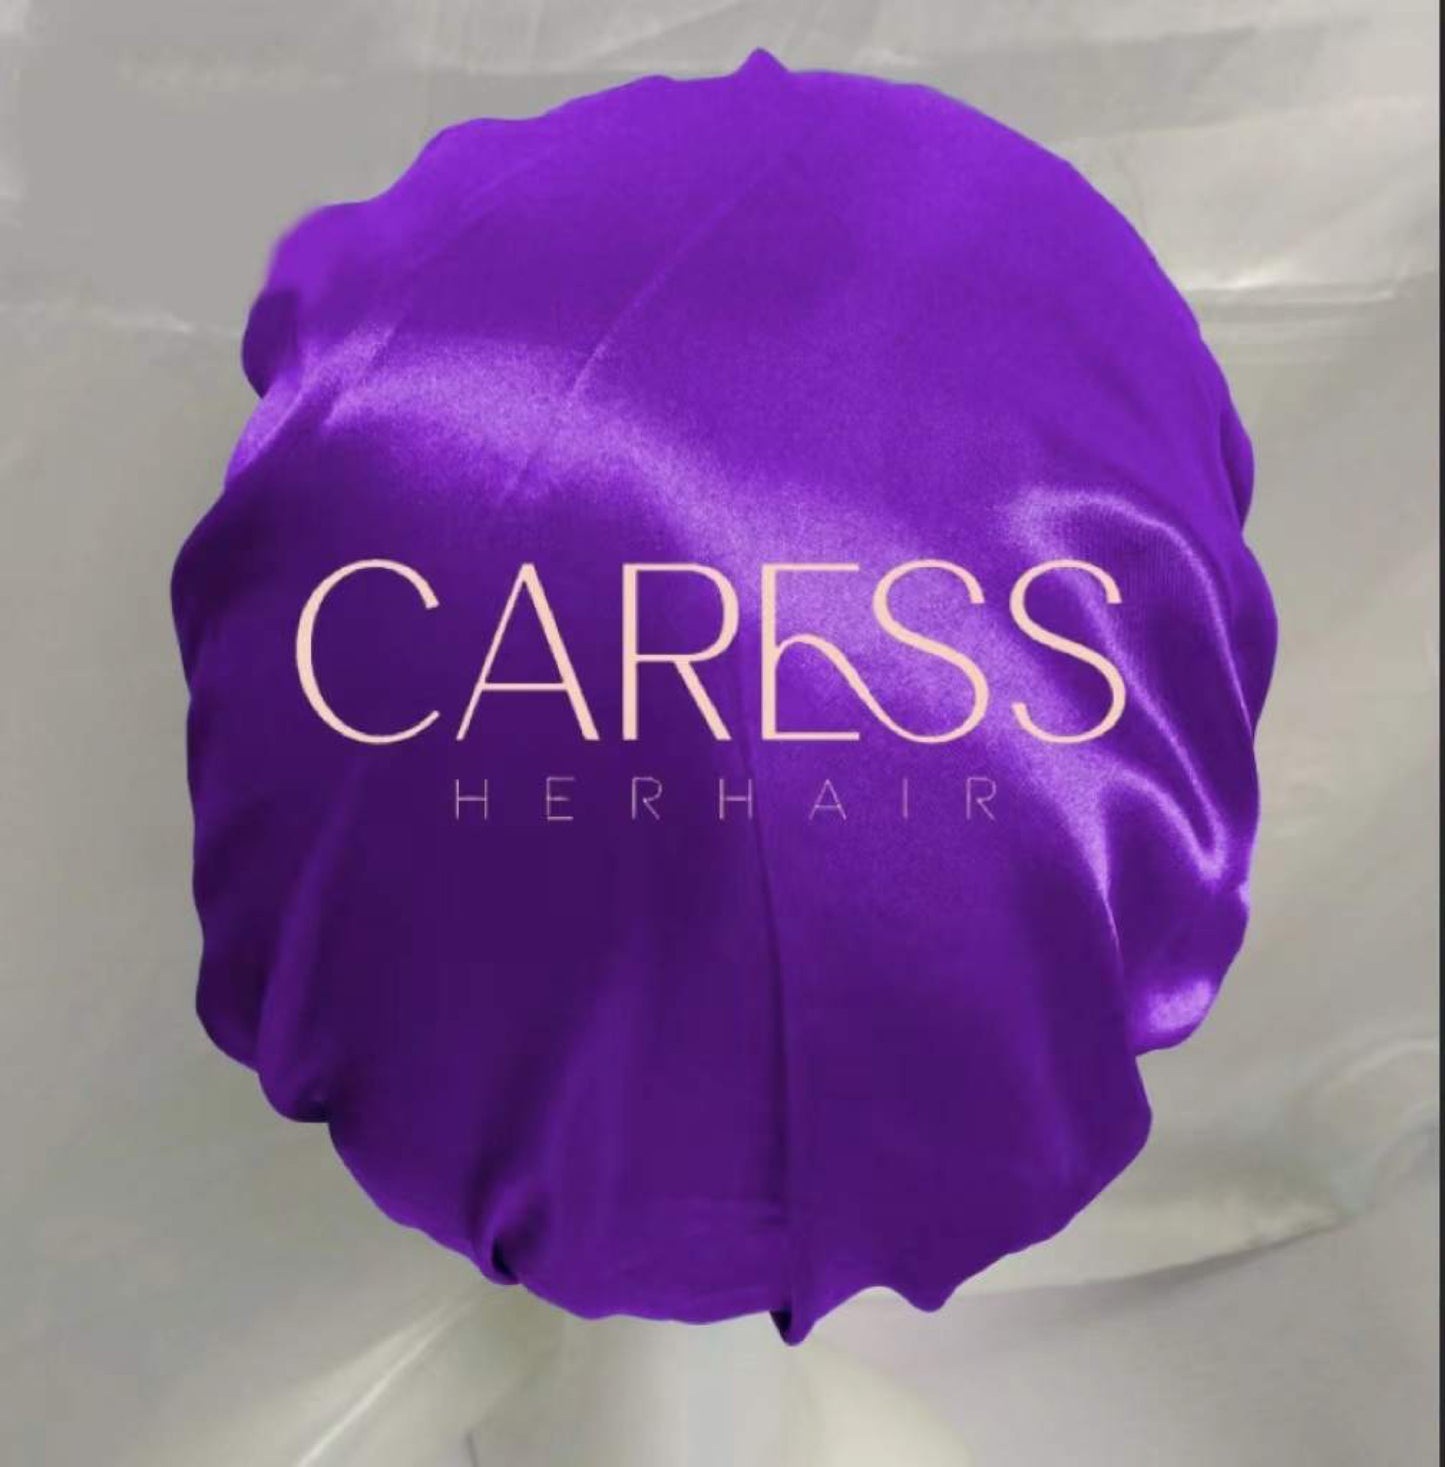 Caress “Mommy” Bonnets